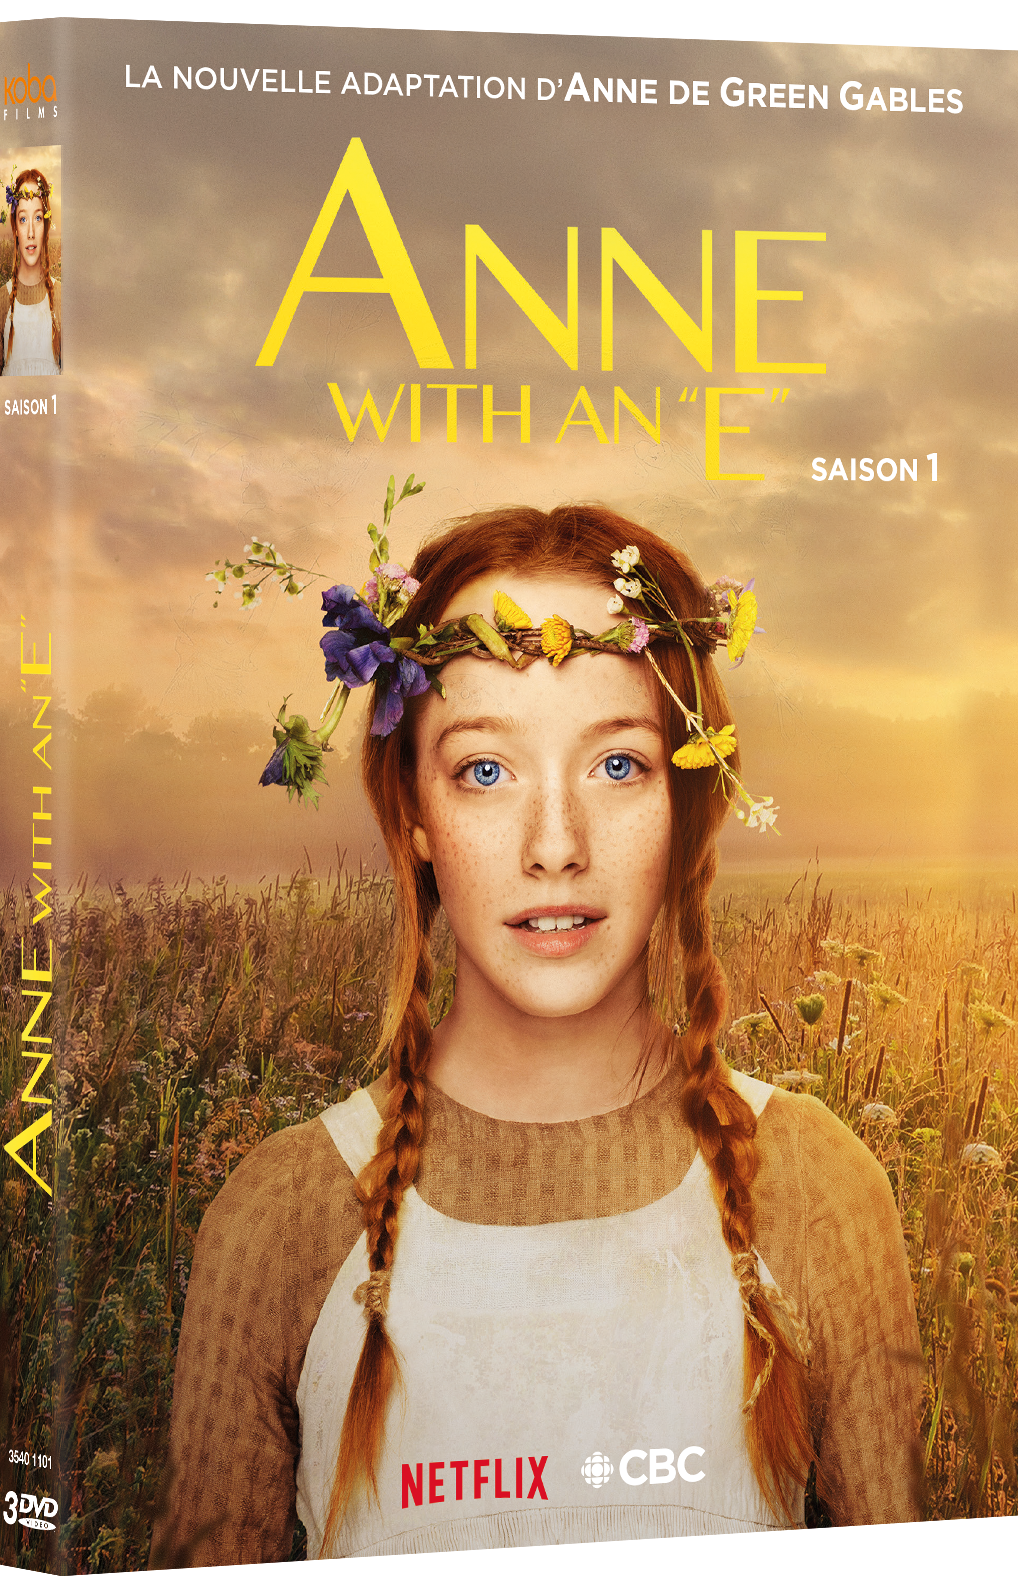 ANNE WITH AN "E" - SAISON 1